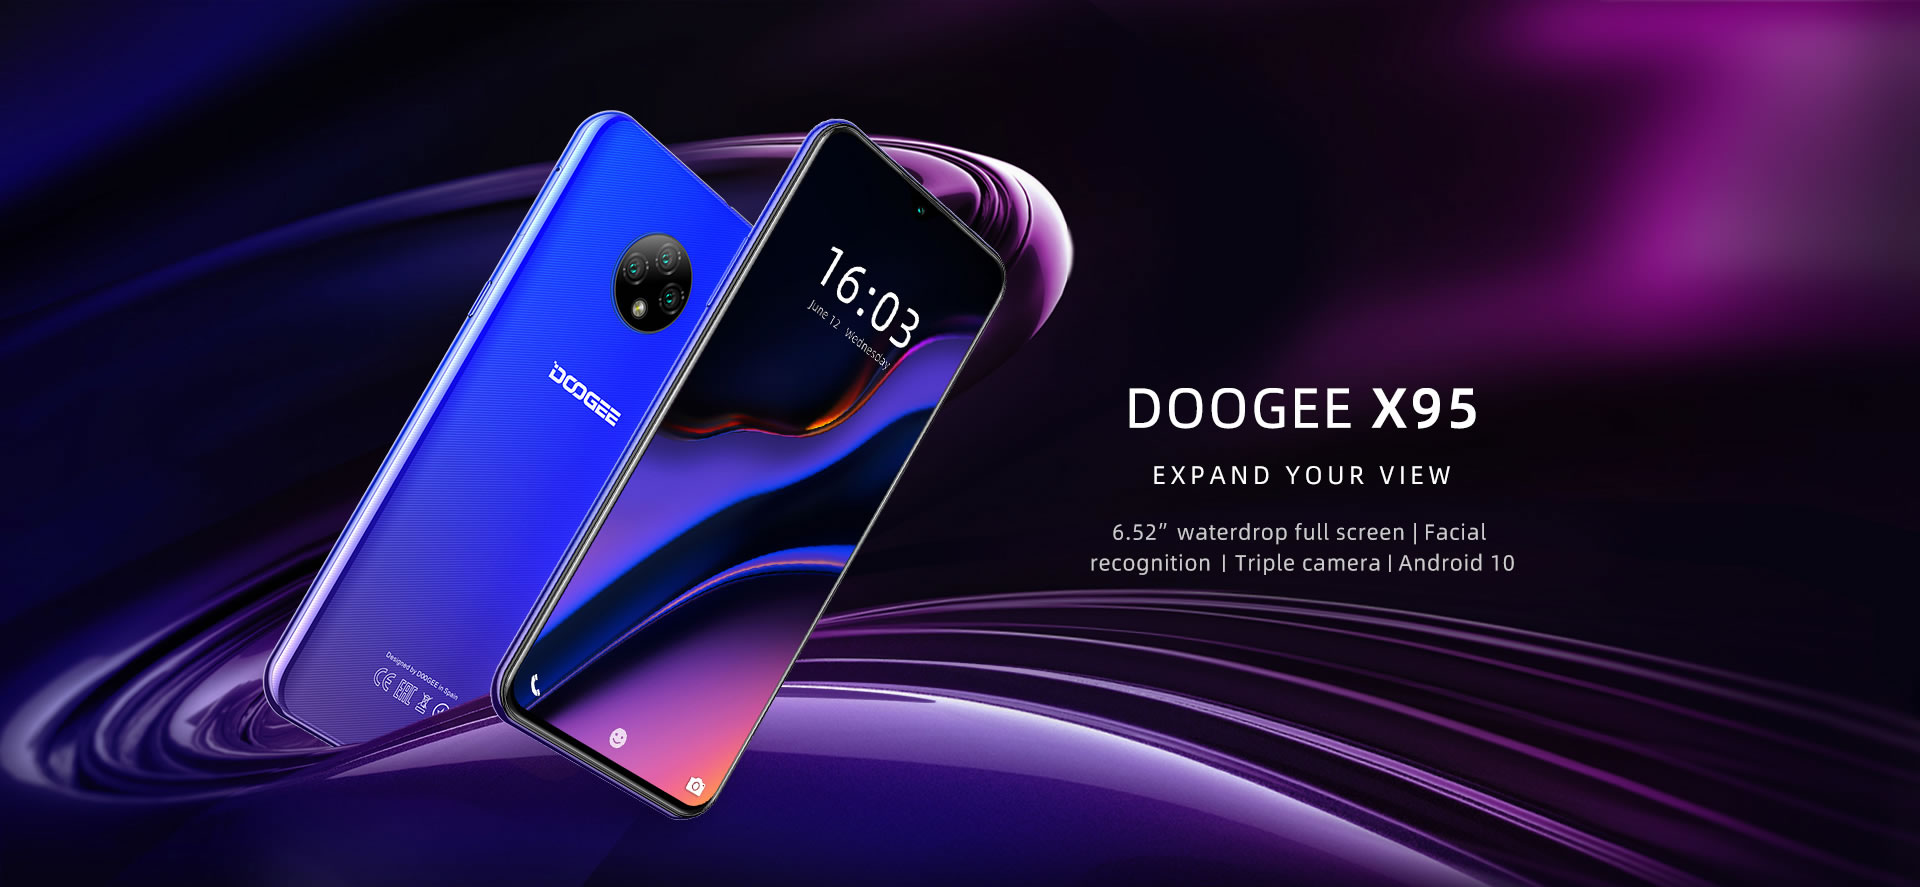 Doogee X95 smartphone